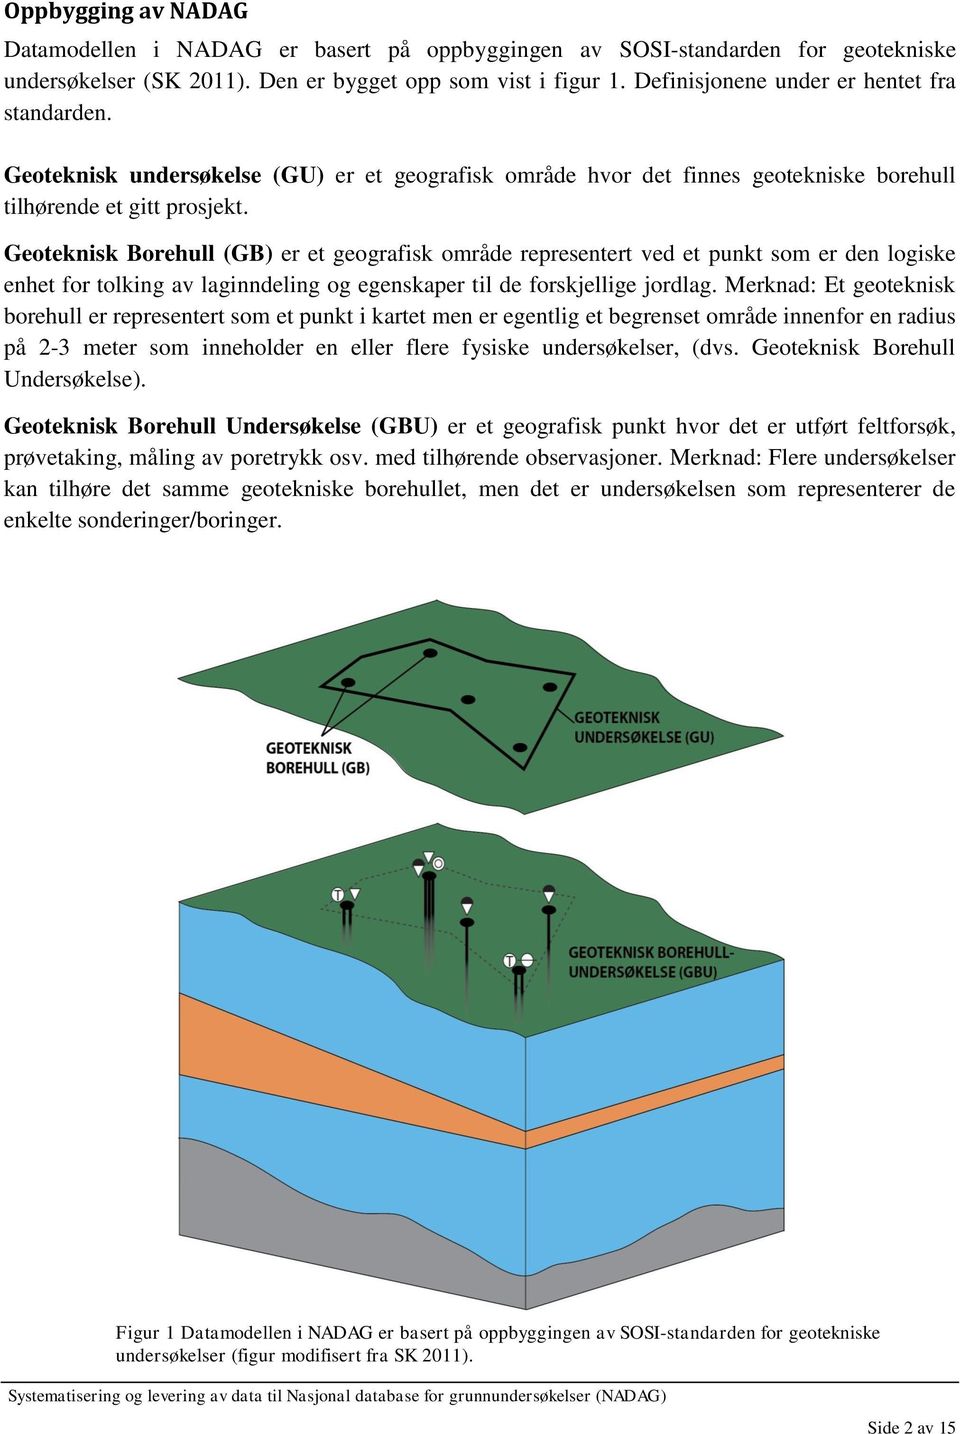 Geoteknisk Borehull (GB) er et geografisk område representert ved et punkt som er den logiske enhet for tolking av laginndeling og egenskaper til de forskjellige jordlag.